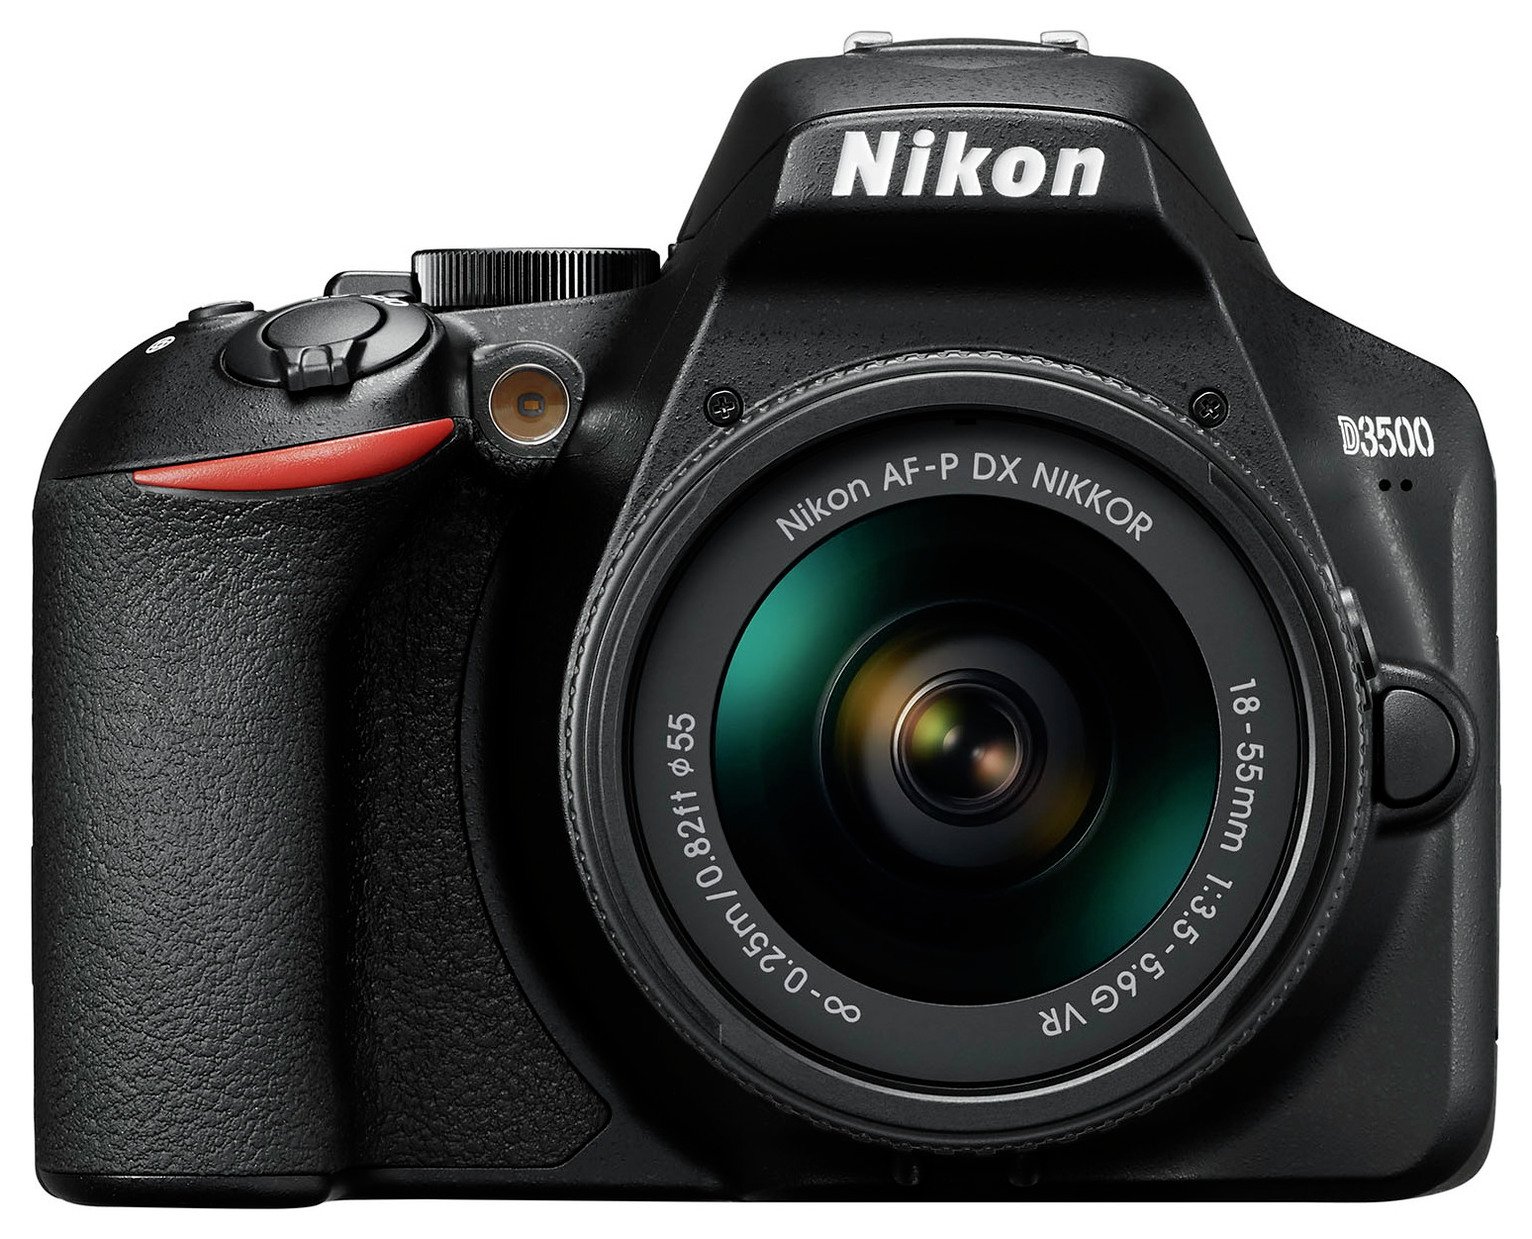 Nikon D3500 DSLR Camera with AF-P DX 18-55mm VR Lens